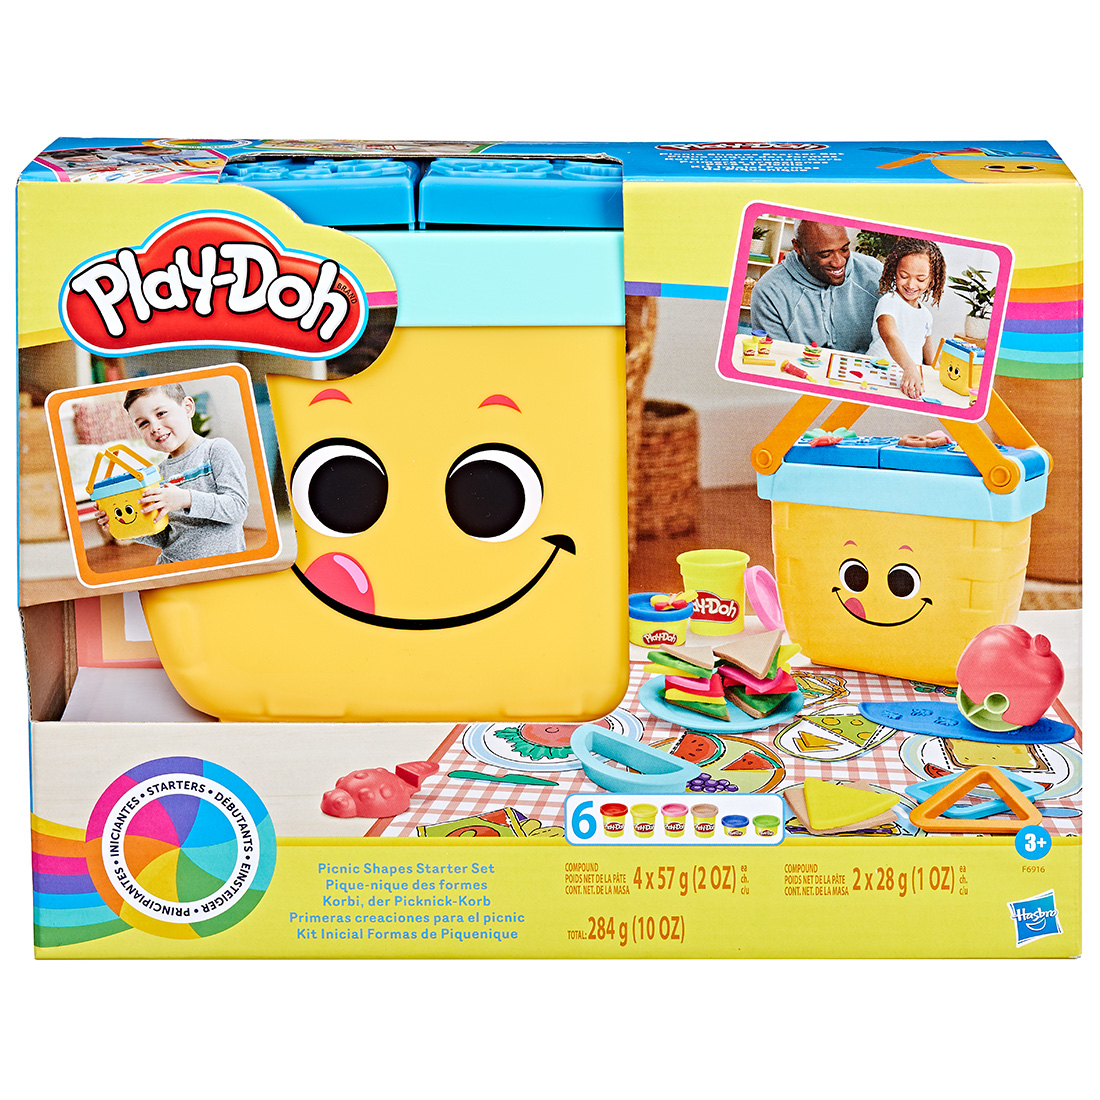 Konkurs! Wygraj nagrodę od Play-doh na Dzień Dziecka!